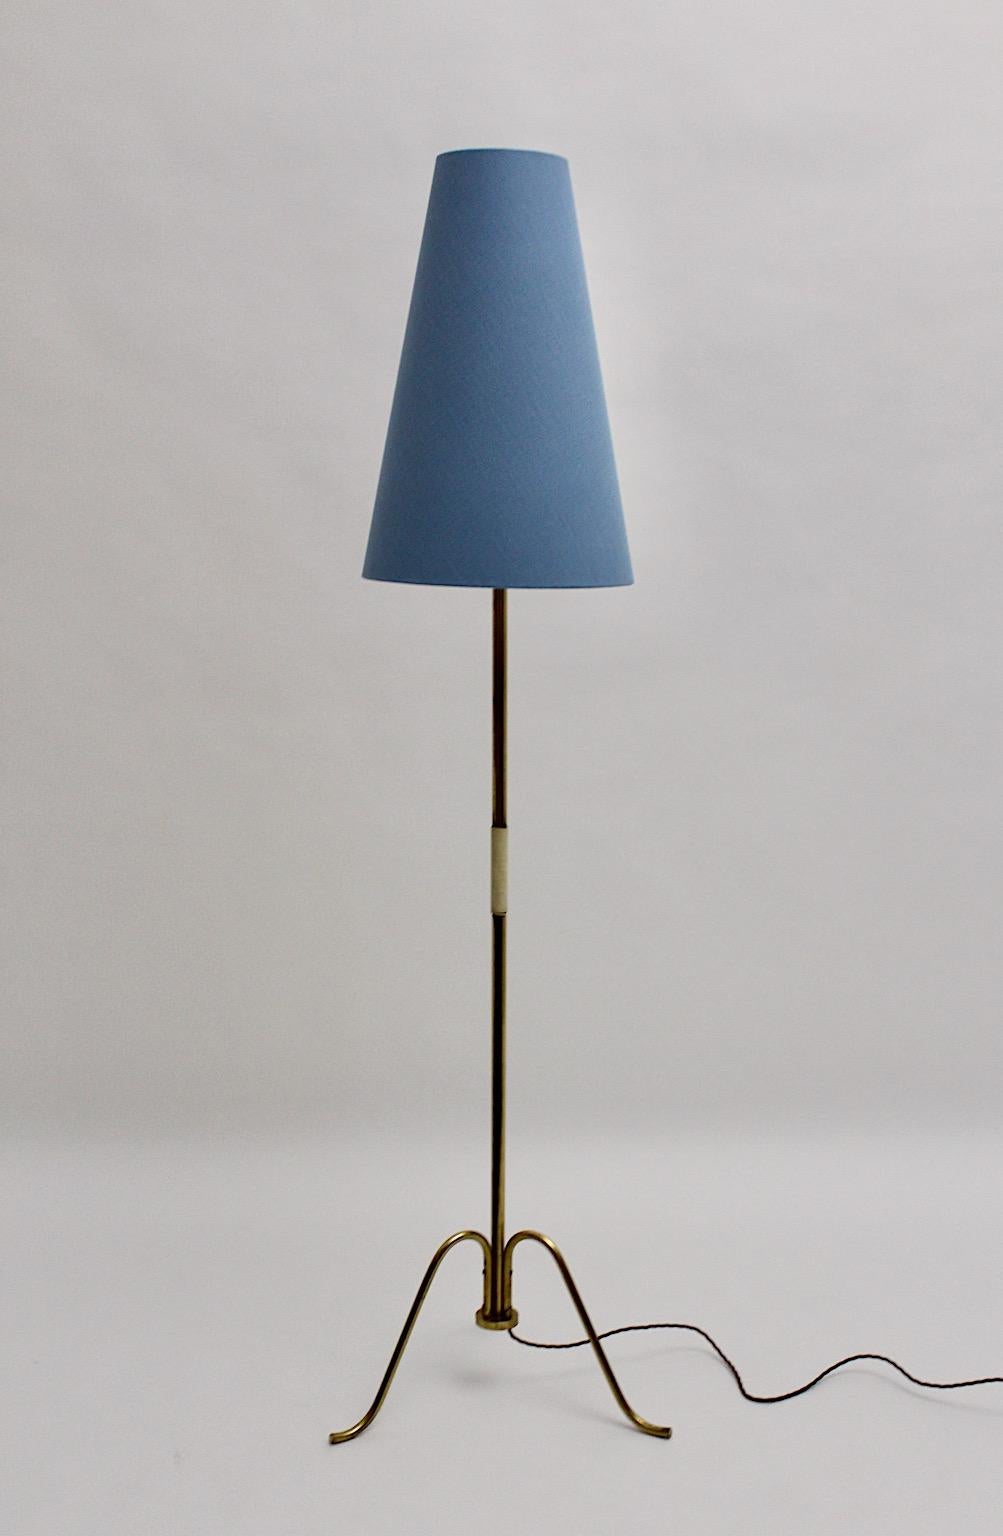 Lampadaire vintage Mid-Century Modern en tube de laiton conçu et fabriqué à Vienne, Autriche, années 1950.
Alors que la tige du tube en laiton est partiellement enveloppée d'une ficelle en plastique blanc en guise de poignée, l'abat-jour renouvelé